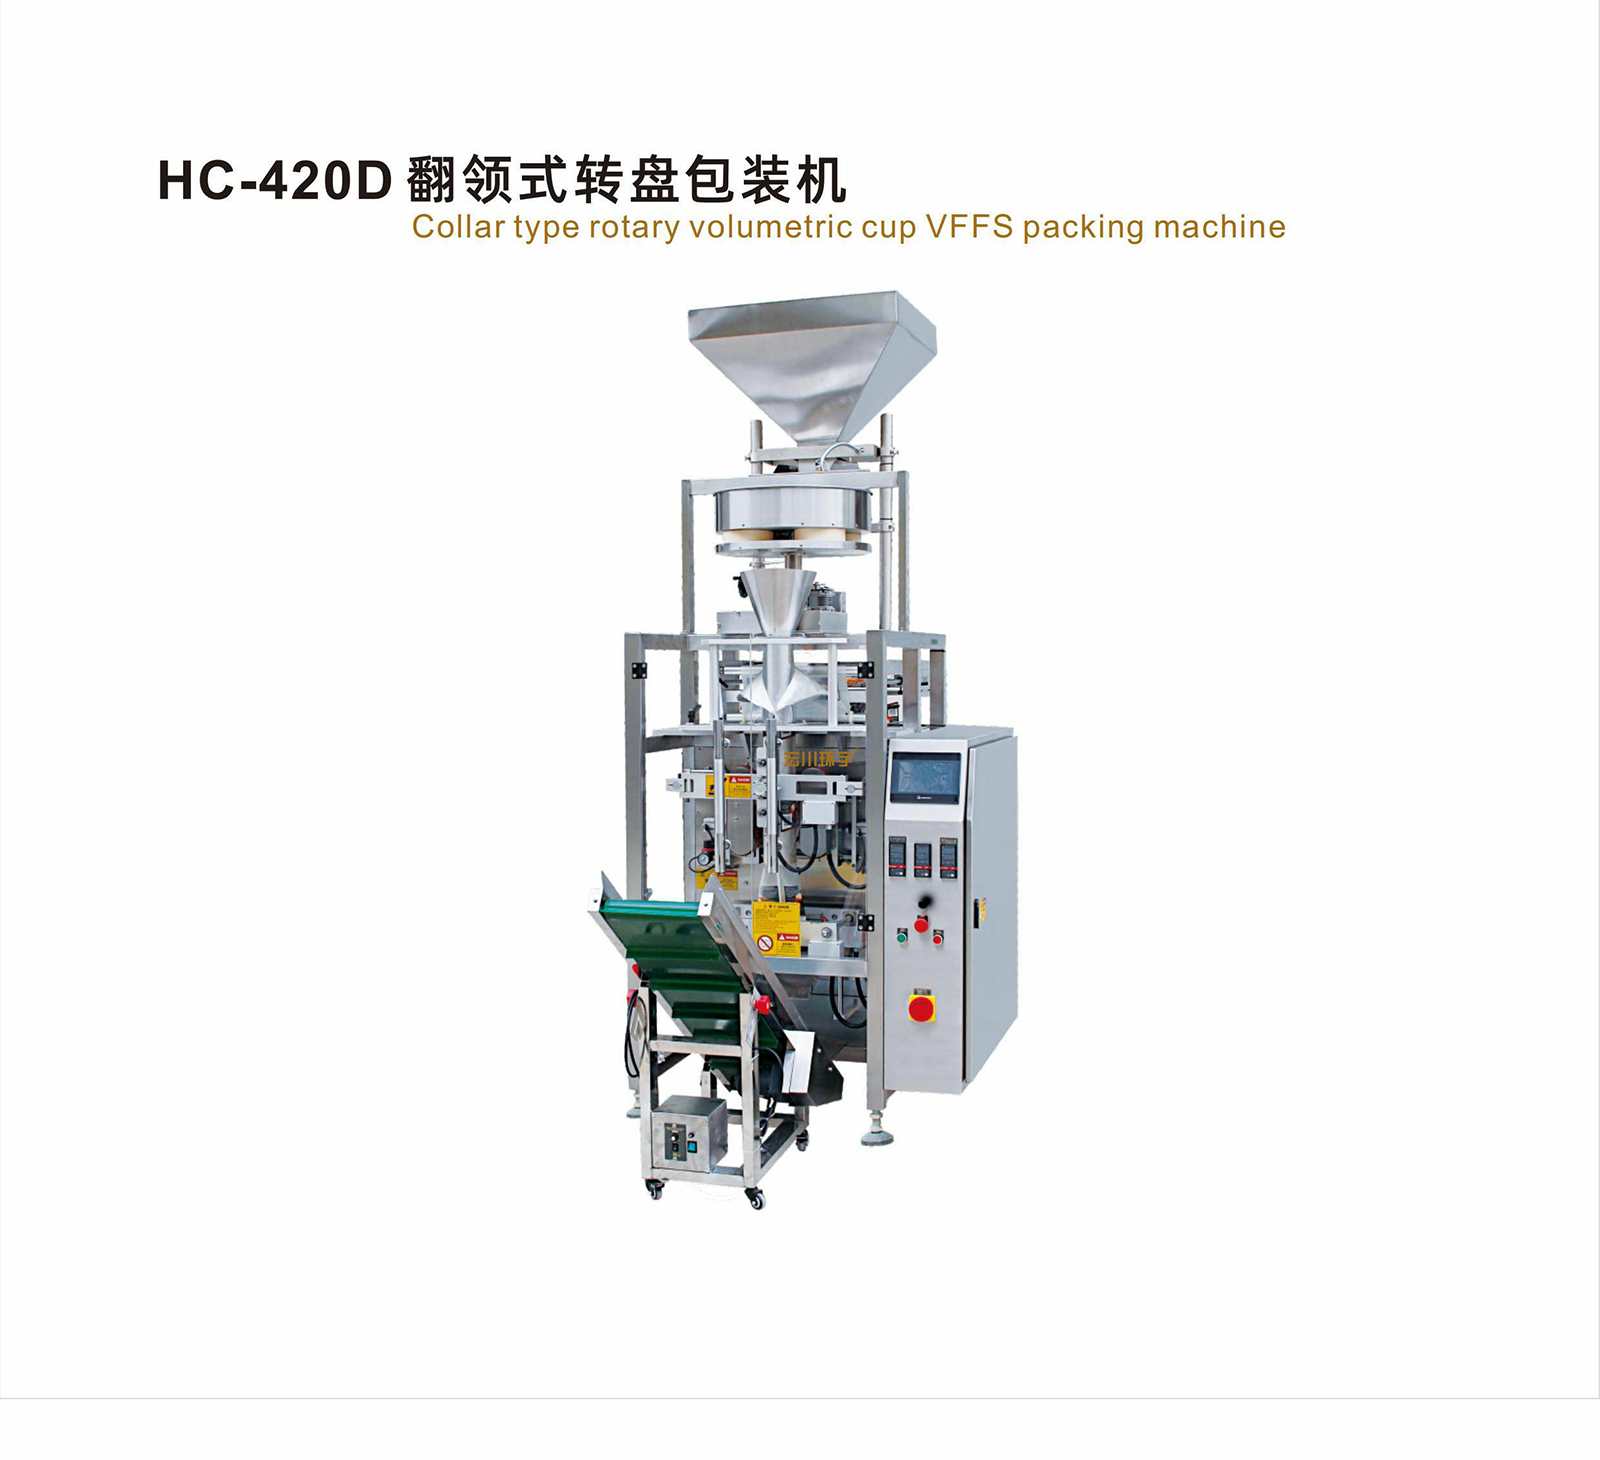 HC-420D 翻领式转盘包装机 - 04-翻领式包装机 - 1